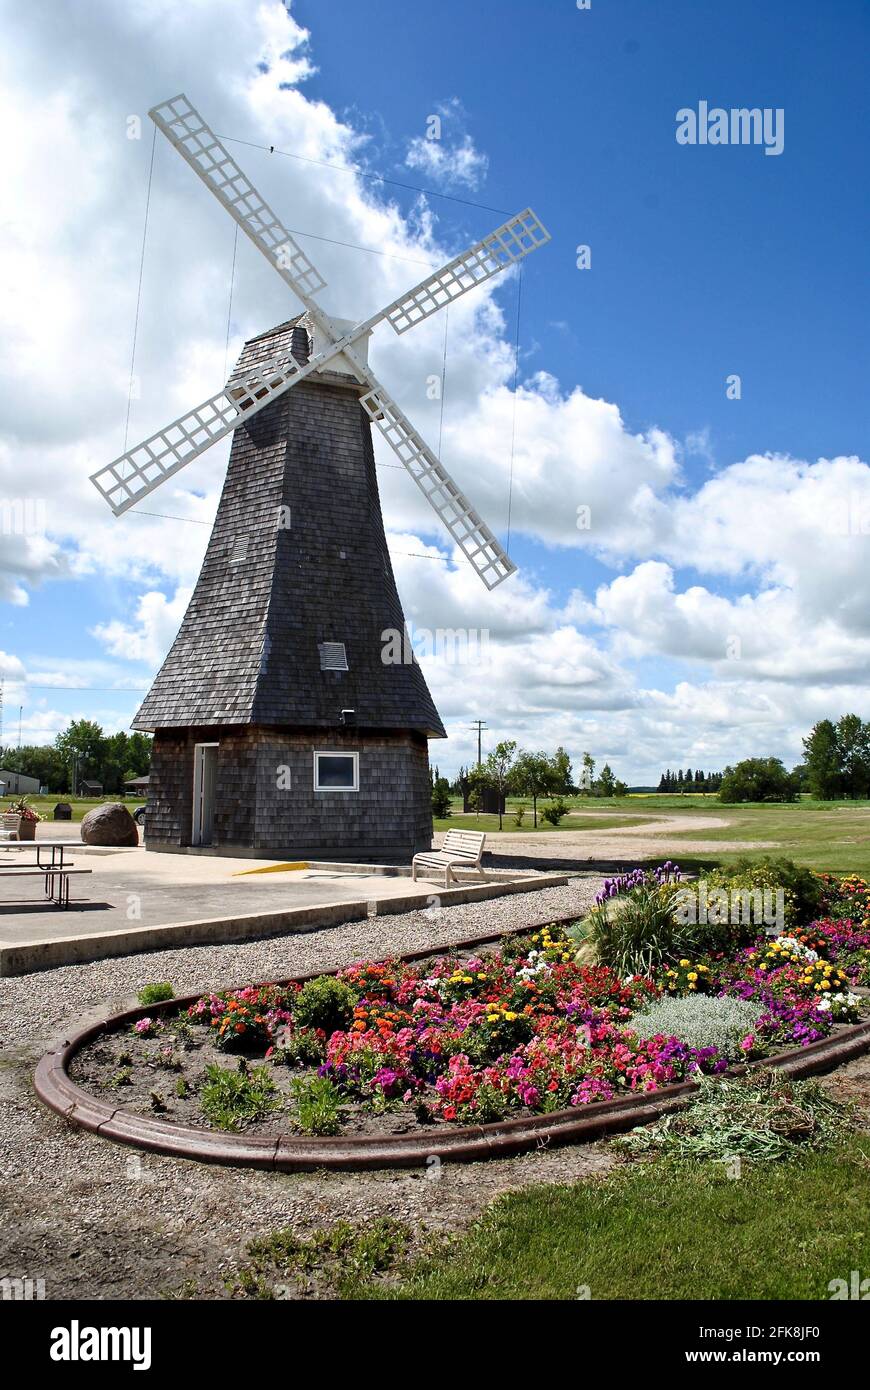 Windmill aux pays-Bas, au Manitoba, au Canada, près de la Transcanadienne. Hommage aux moulins à vent de Hollande (pays-Bas). Attraction routière canadienne. Banque D'Images